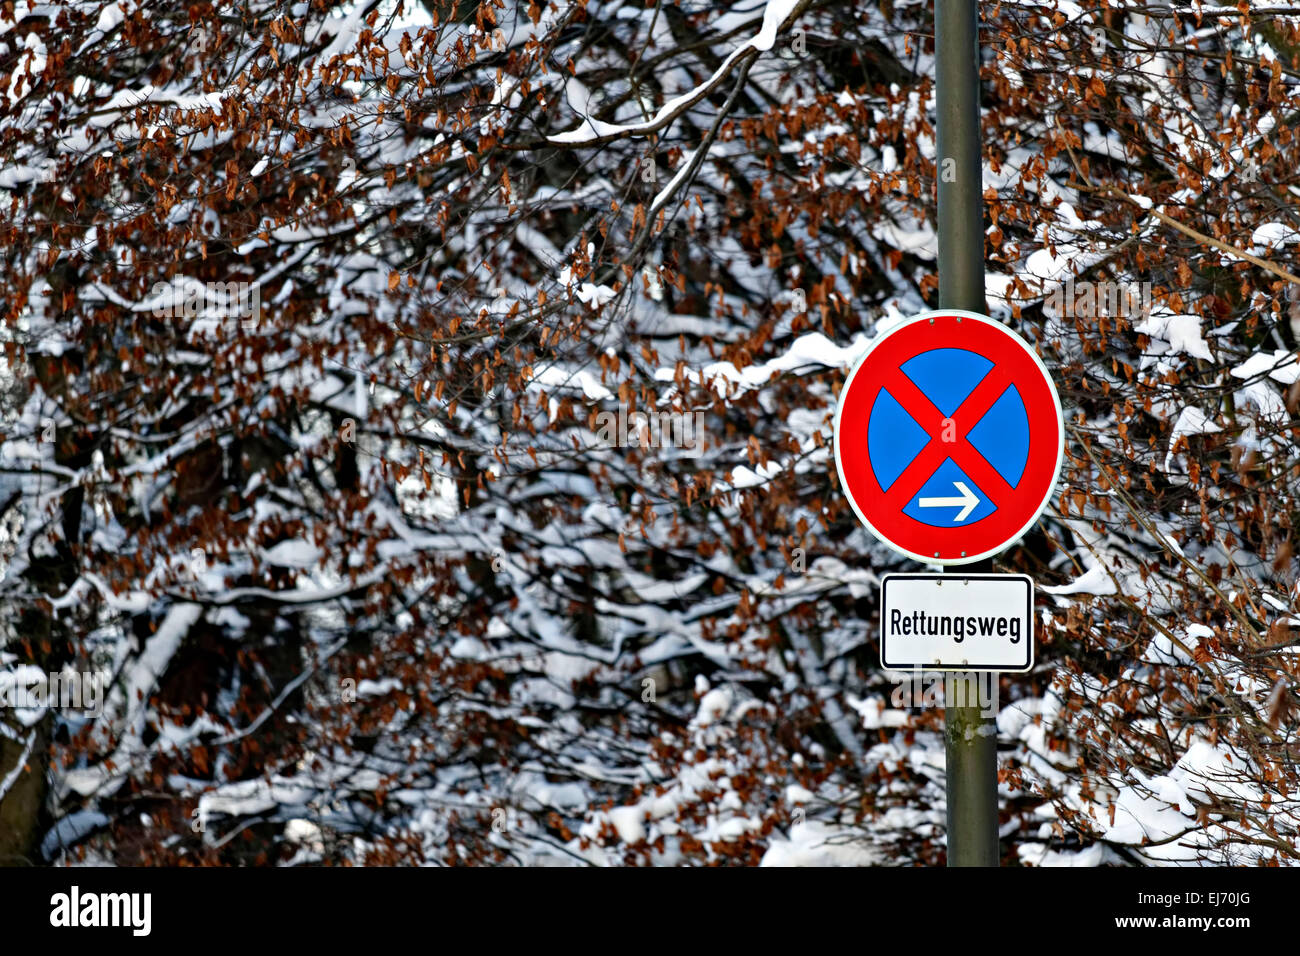 Restez à l'écart allemand panneau routier (Rettungsweg), Chiemsee, Chiemgau, Upper Bavaria, Germany, Europe. Banque D'Images